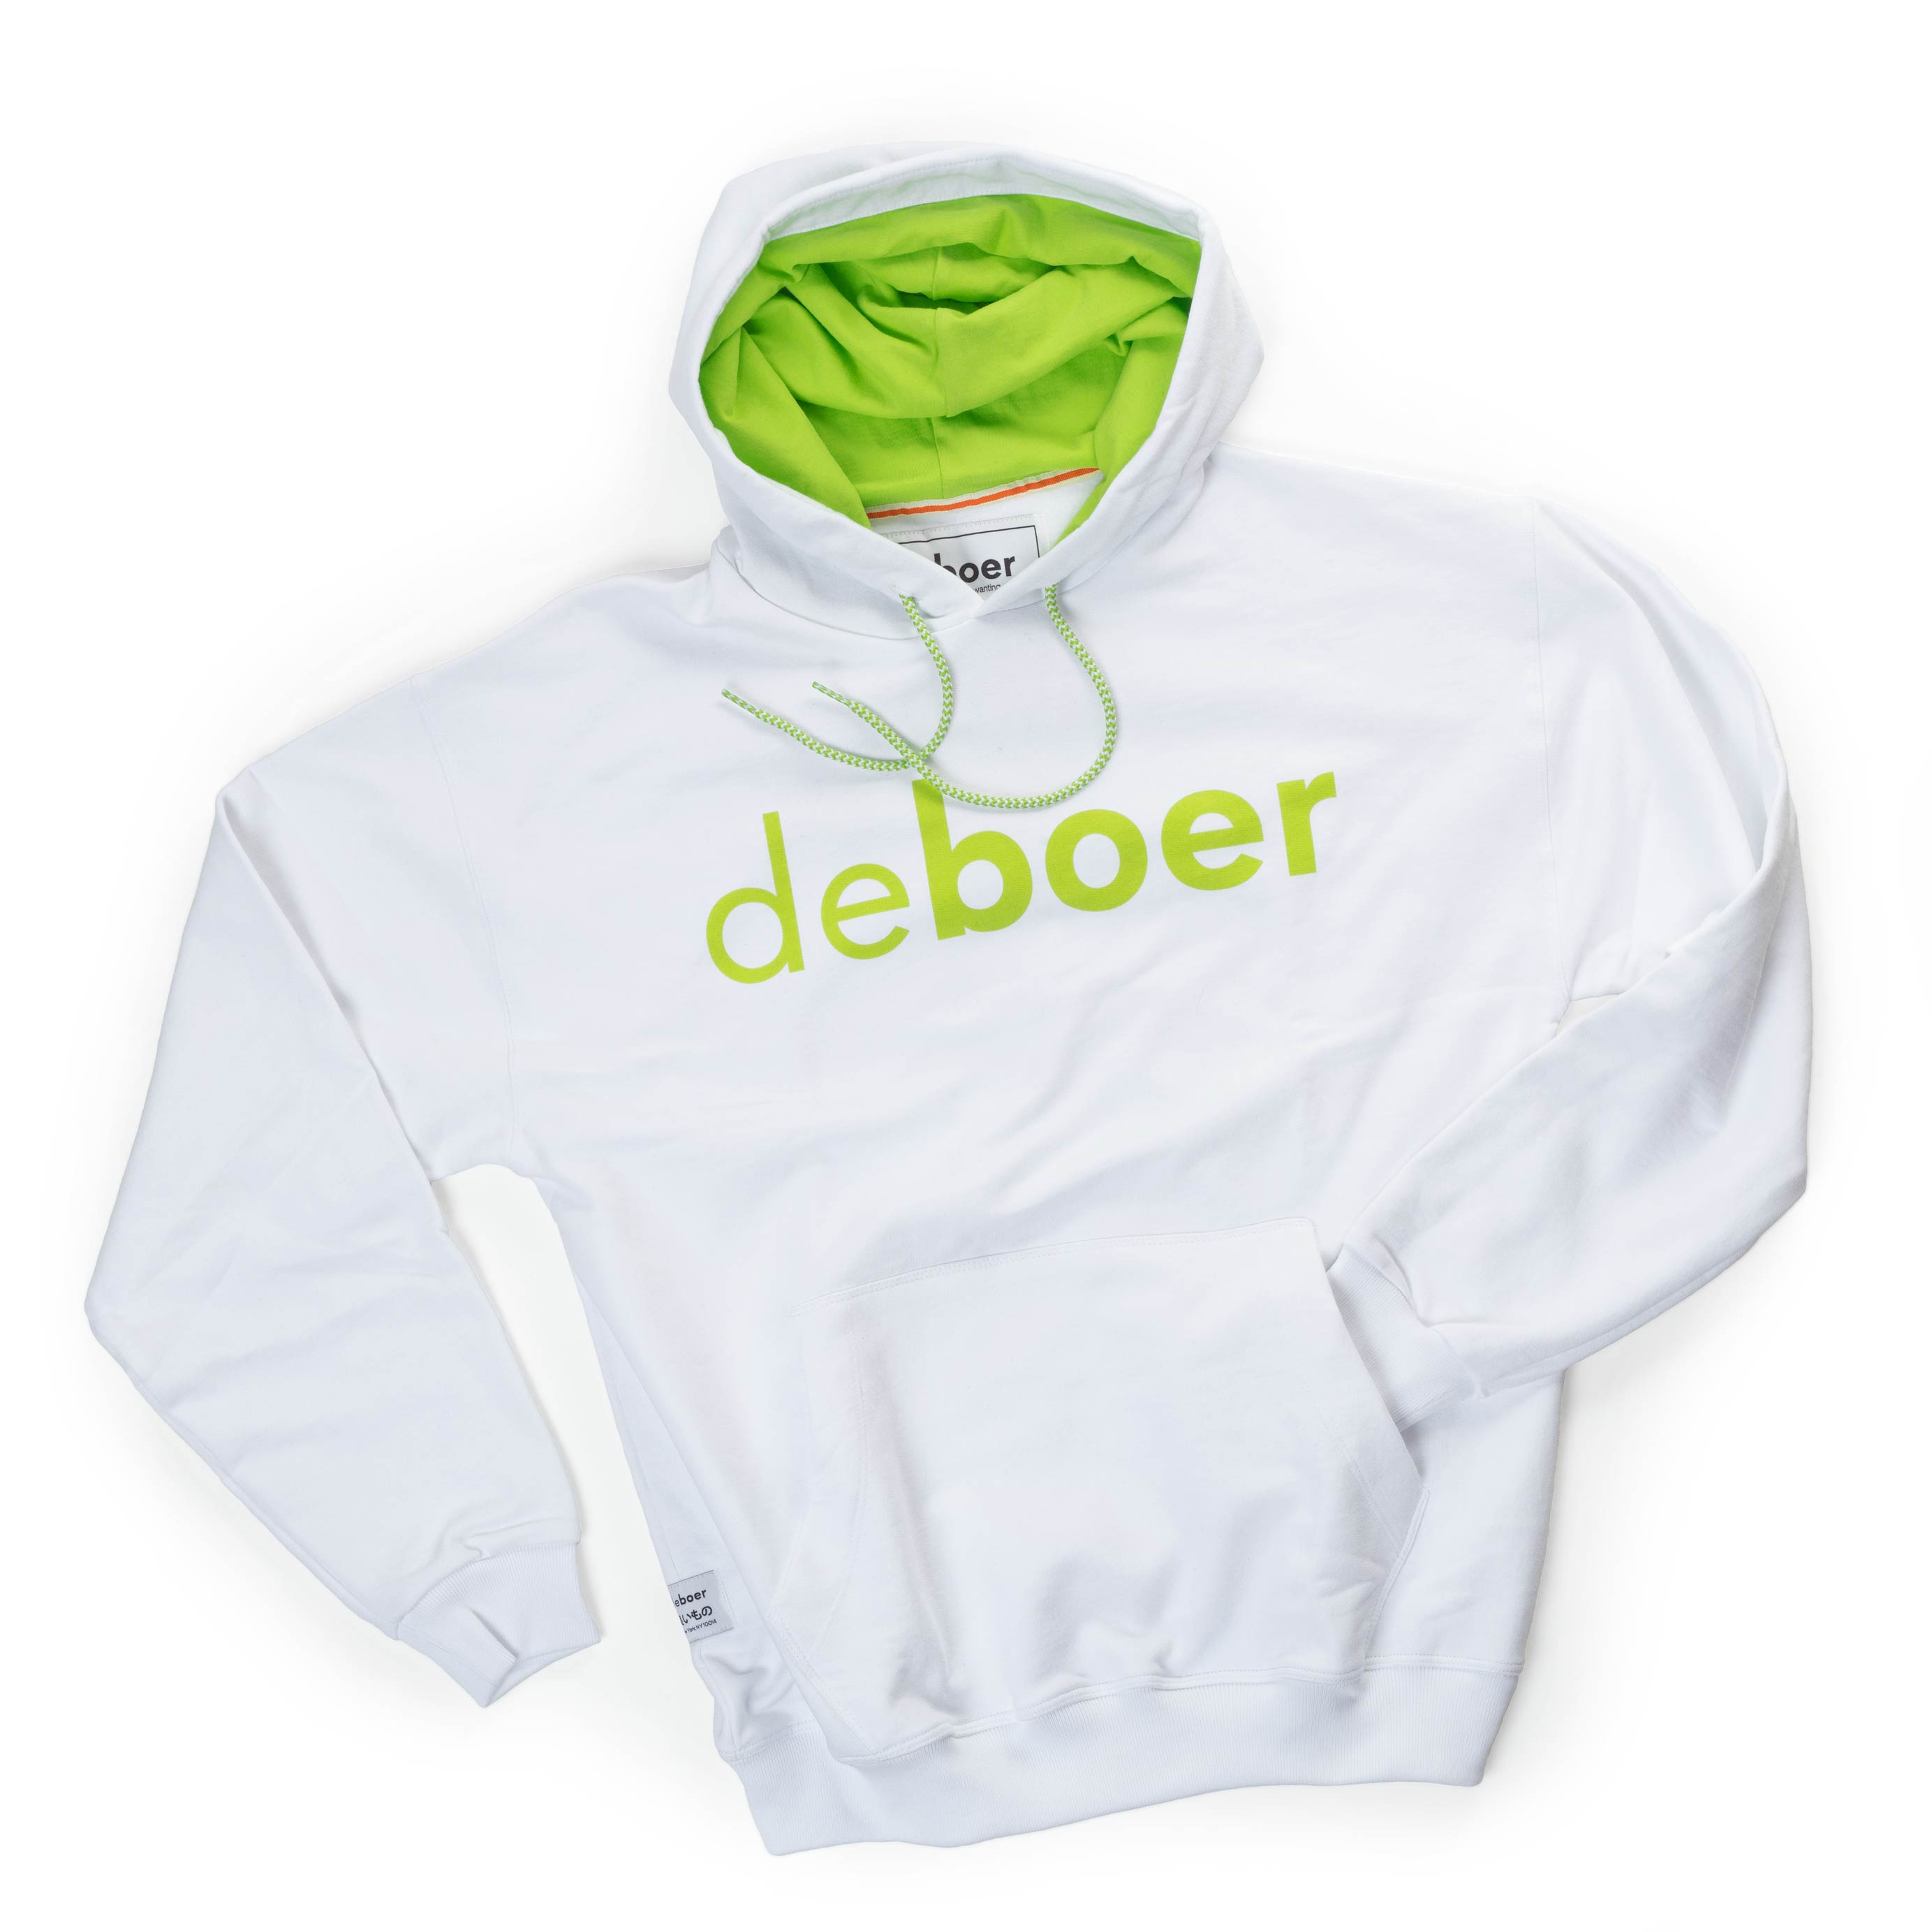 DeBoer Premium Hoodie Unisex